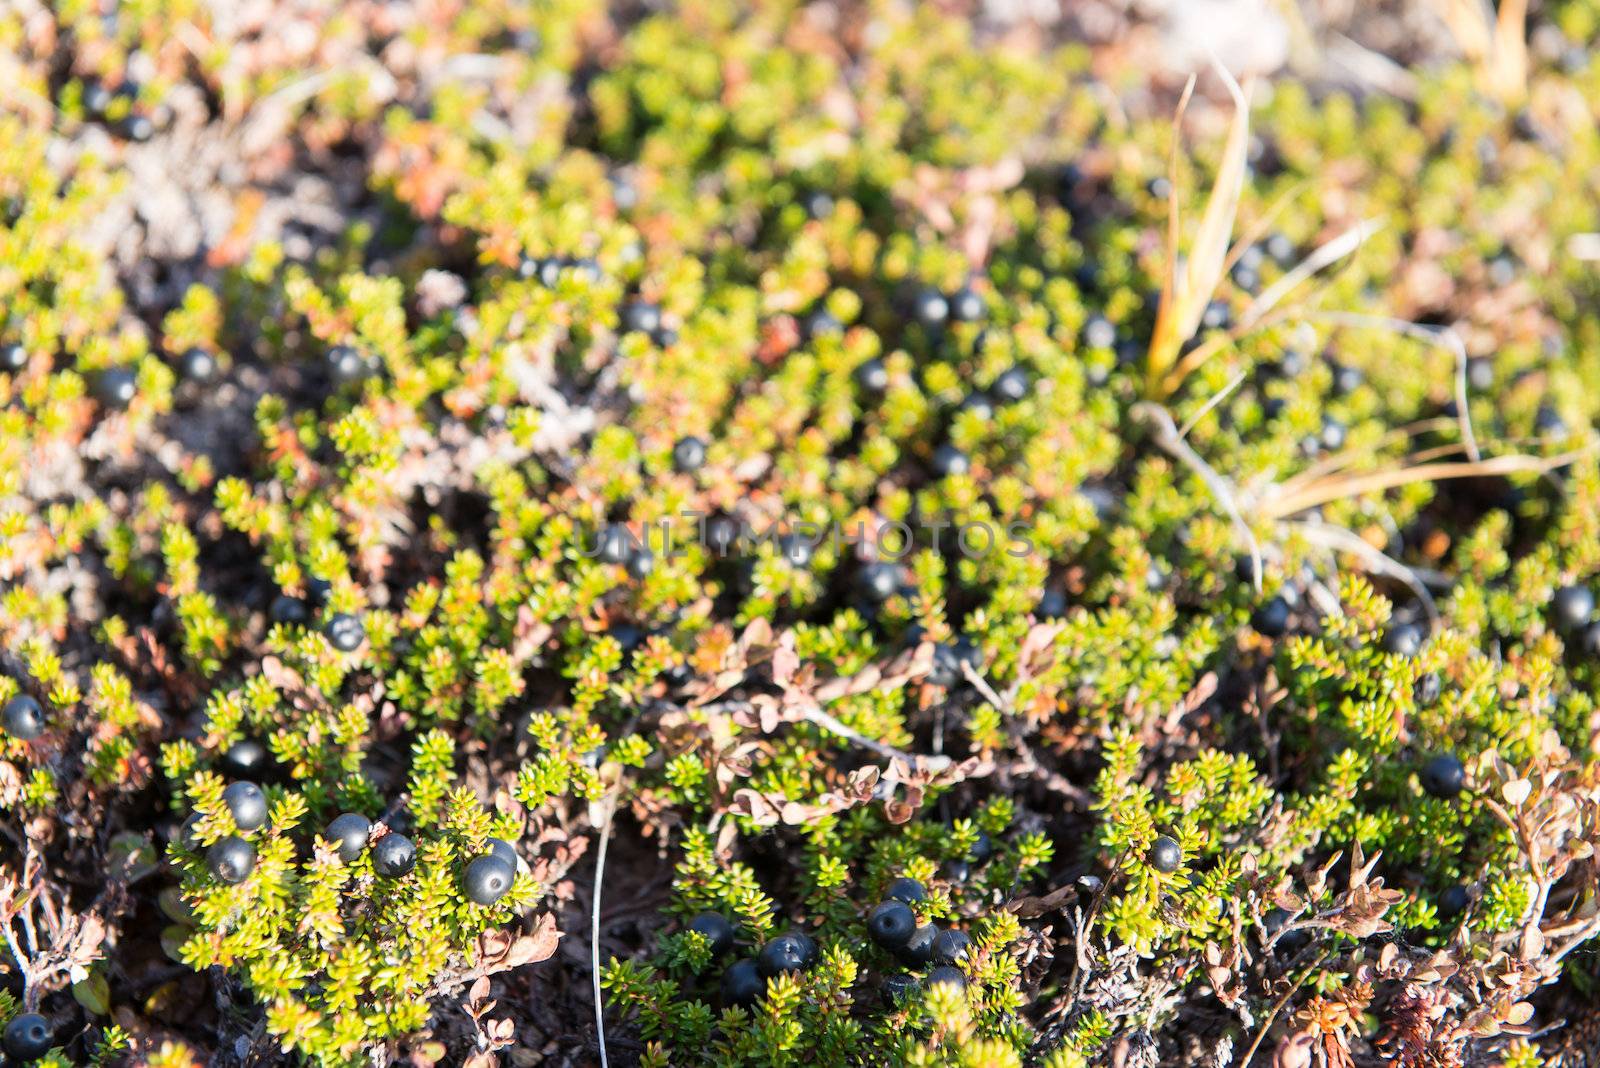 Wild black crowberries on Empetrum nigrum bush in Greenland by Arrxxx